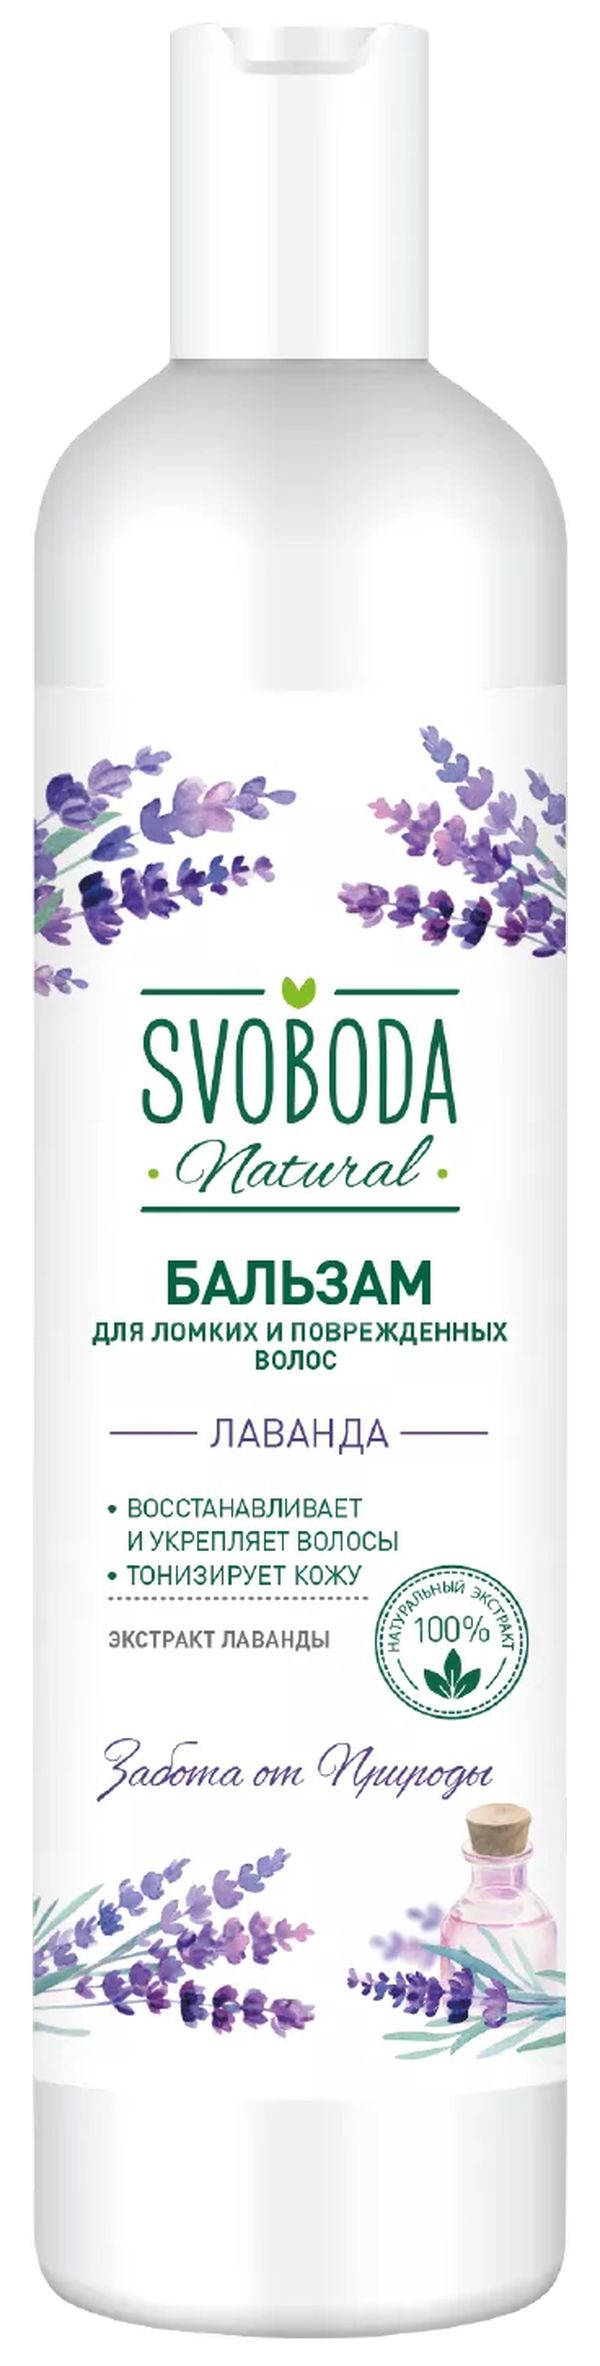 Бальзам-ополаскиватель Svoboda Natural для ломких и поврежденных волос 430мл